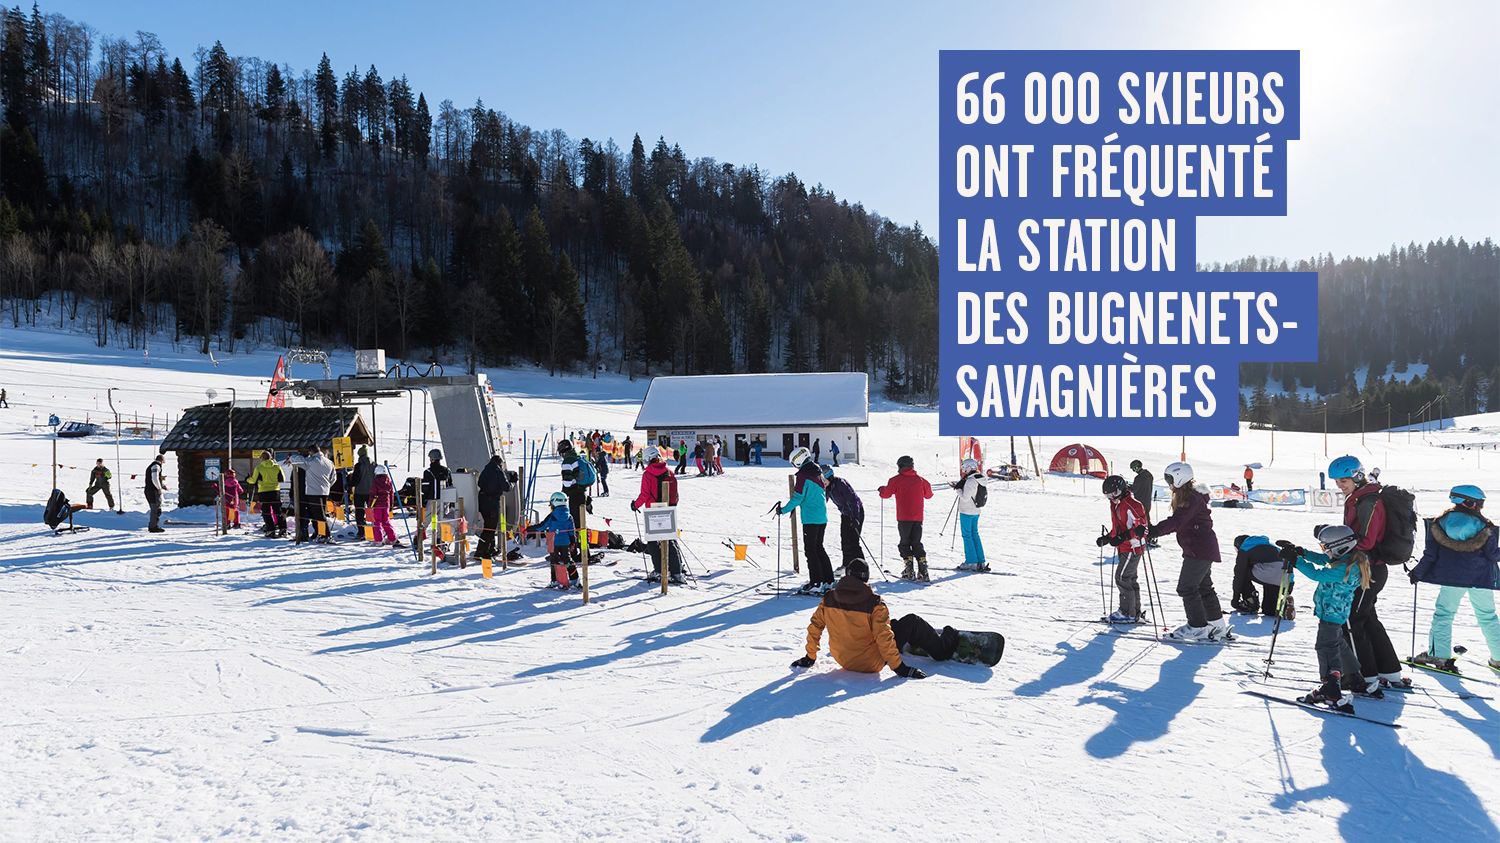 Même si la neige a manqué pendant les fêtes de Noël, les stations de ski ont pu rattraper leur retard: Les Bugnenets-Savagnières ont ouvert du 11 janvier au 3 mars.